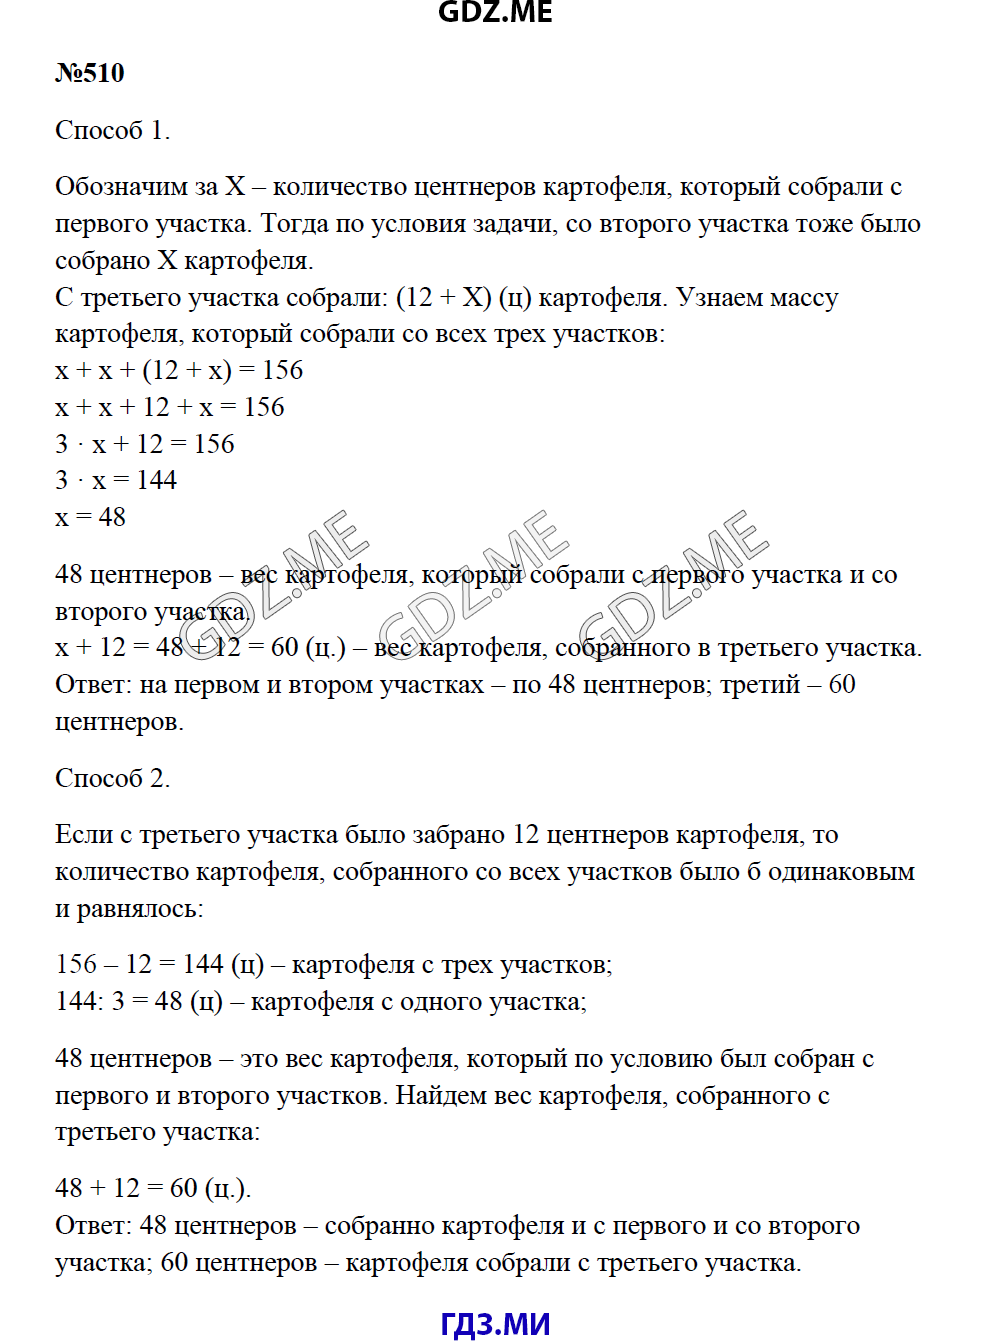 Страница (упражнение) 510 учебника. Ответ на вопрос упражнения 510 ГДЗ решебник по математике 5 класс Зубарева Мордкович